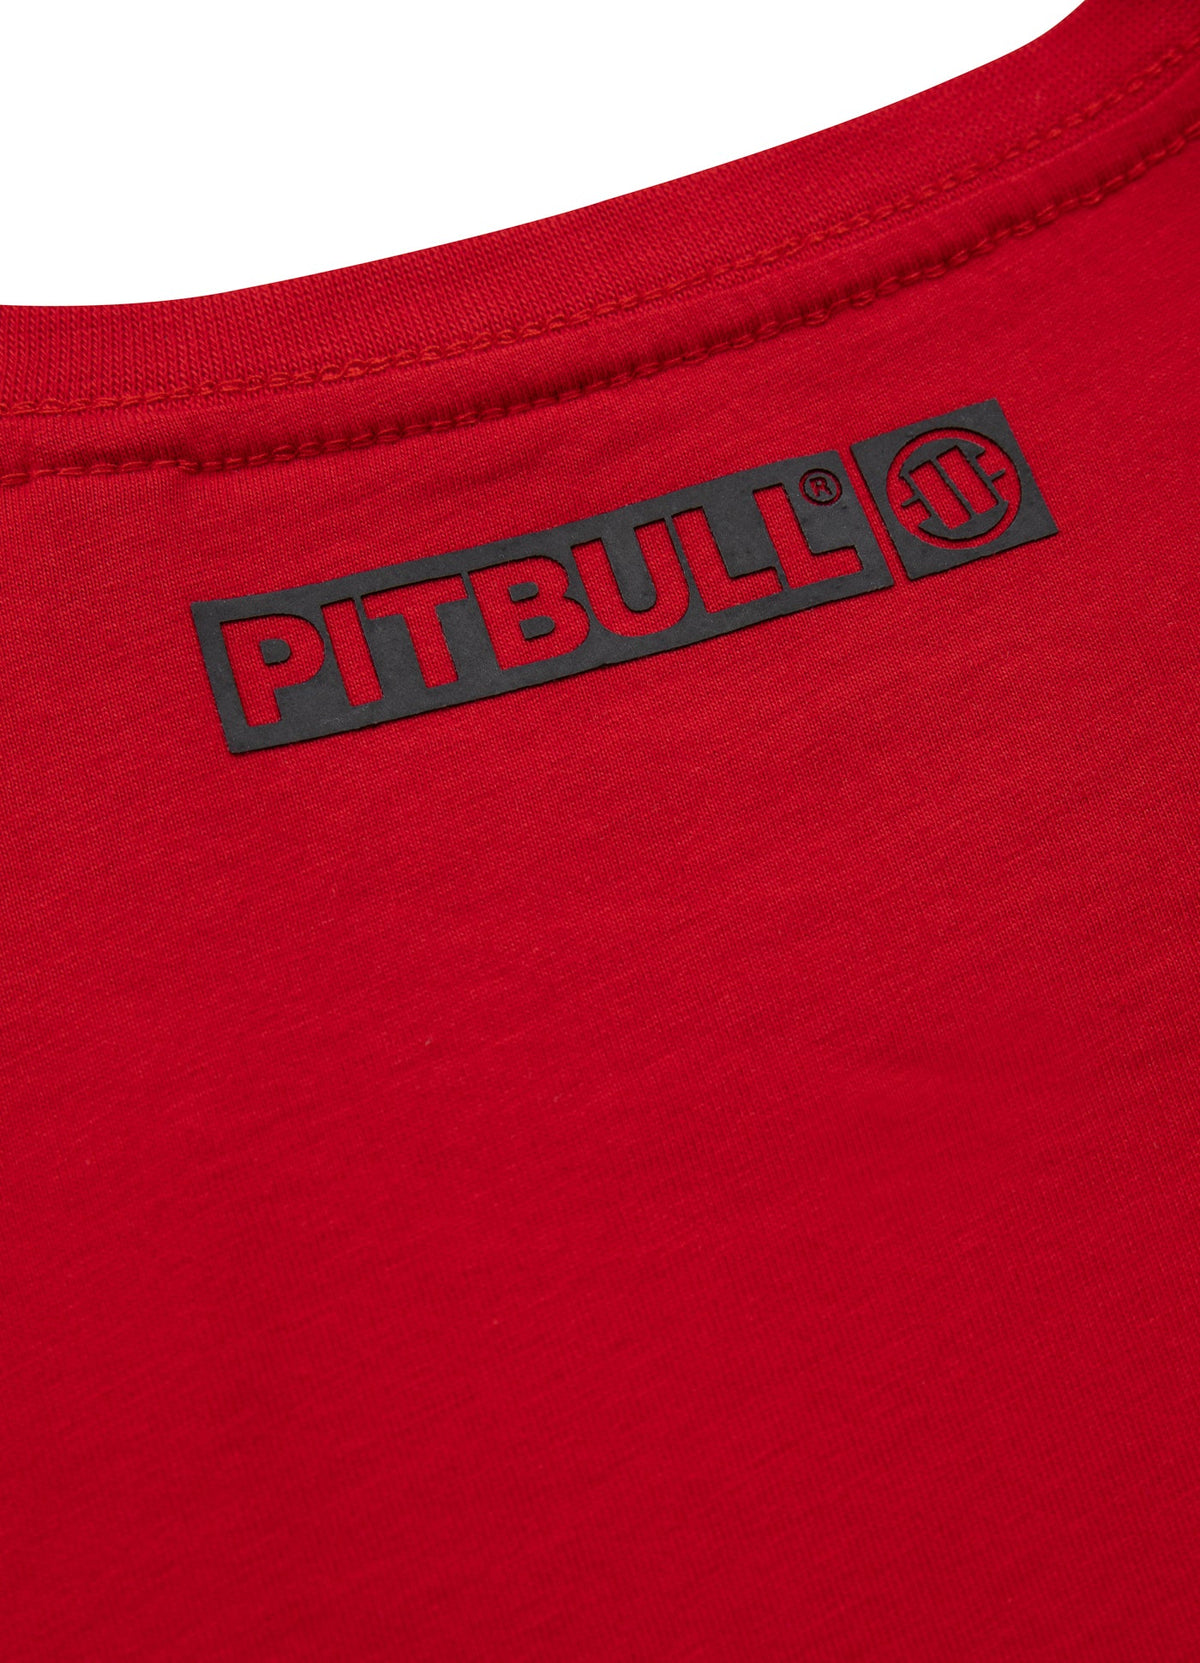 HILLTOP Lightweight Red T-shirt